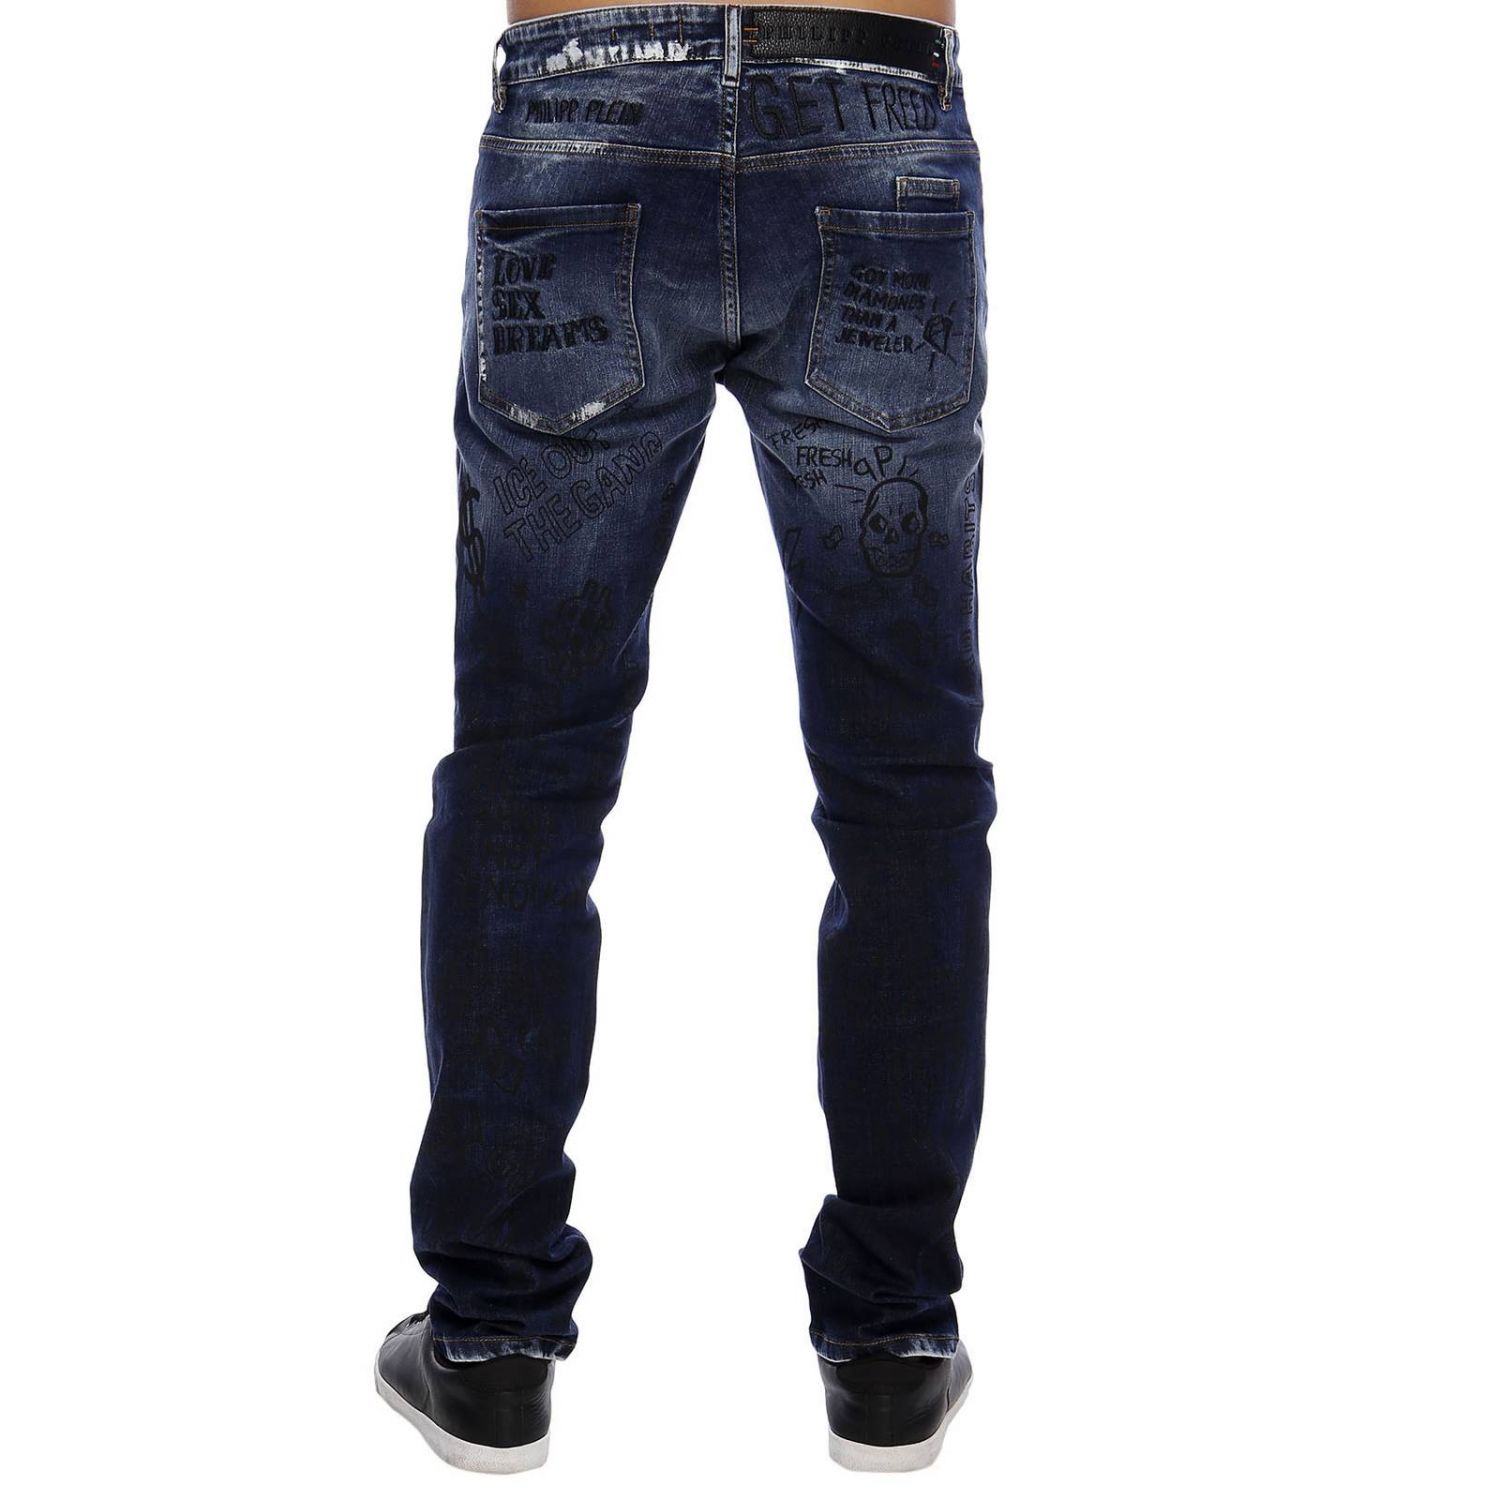 Philipp Plein Outlet: Jeans men | Jeans Philipp Plein Men Denim | Jeans ...